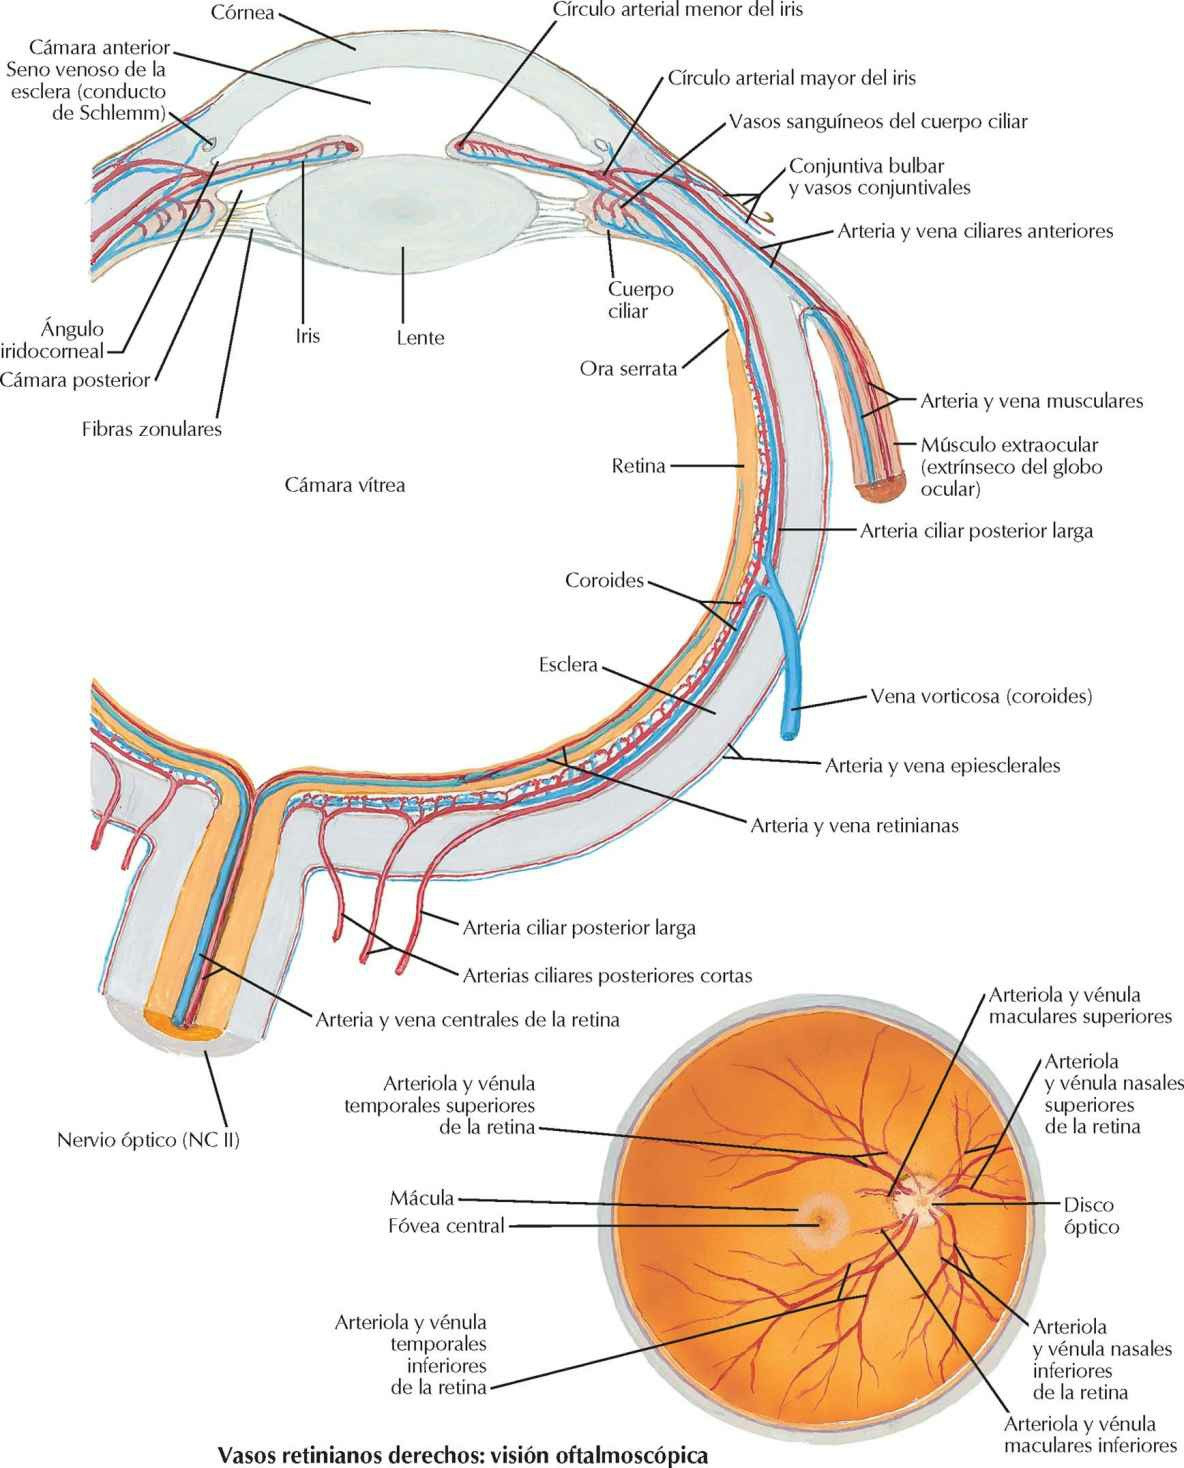 Arterias y venas intrínsecas del ojo.